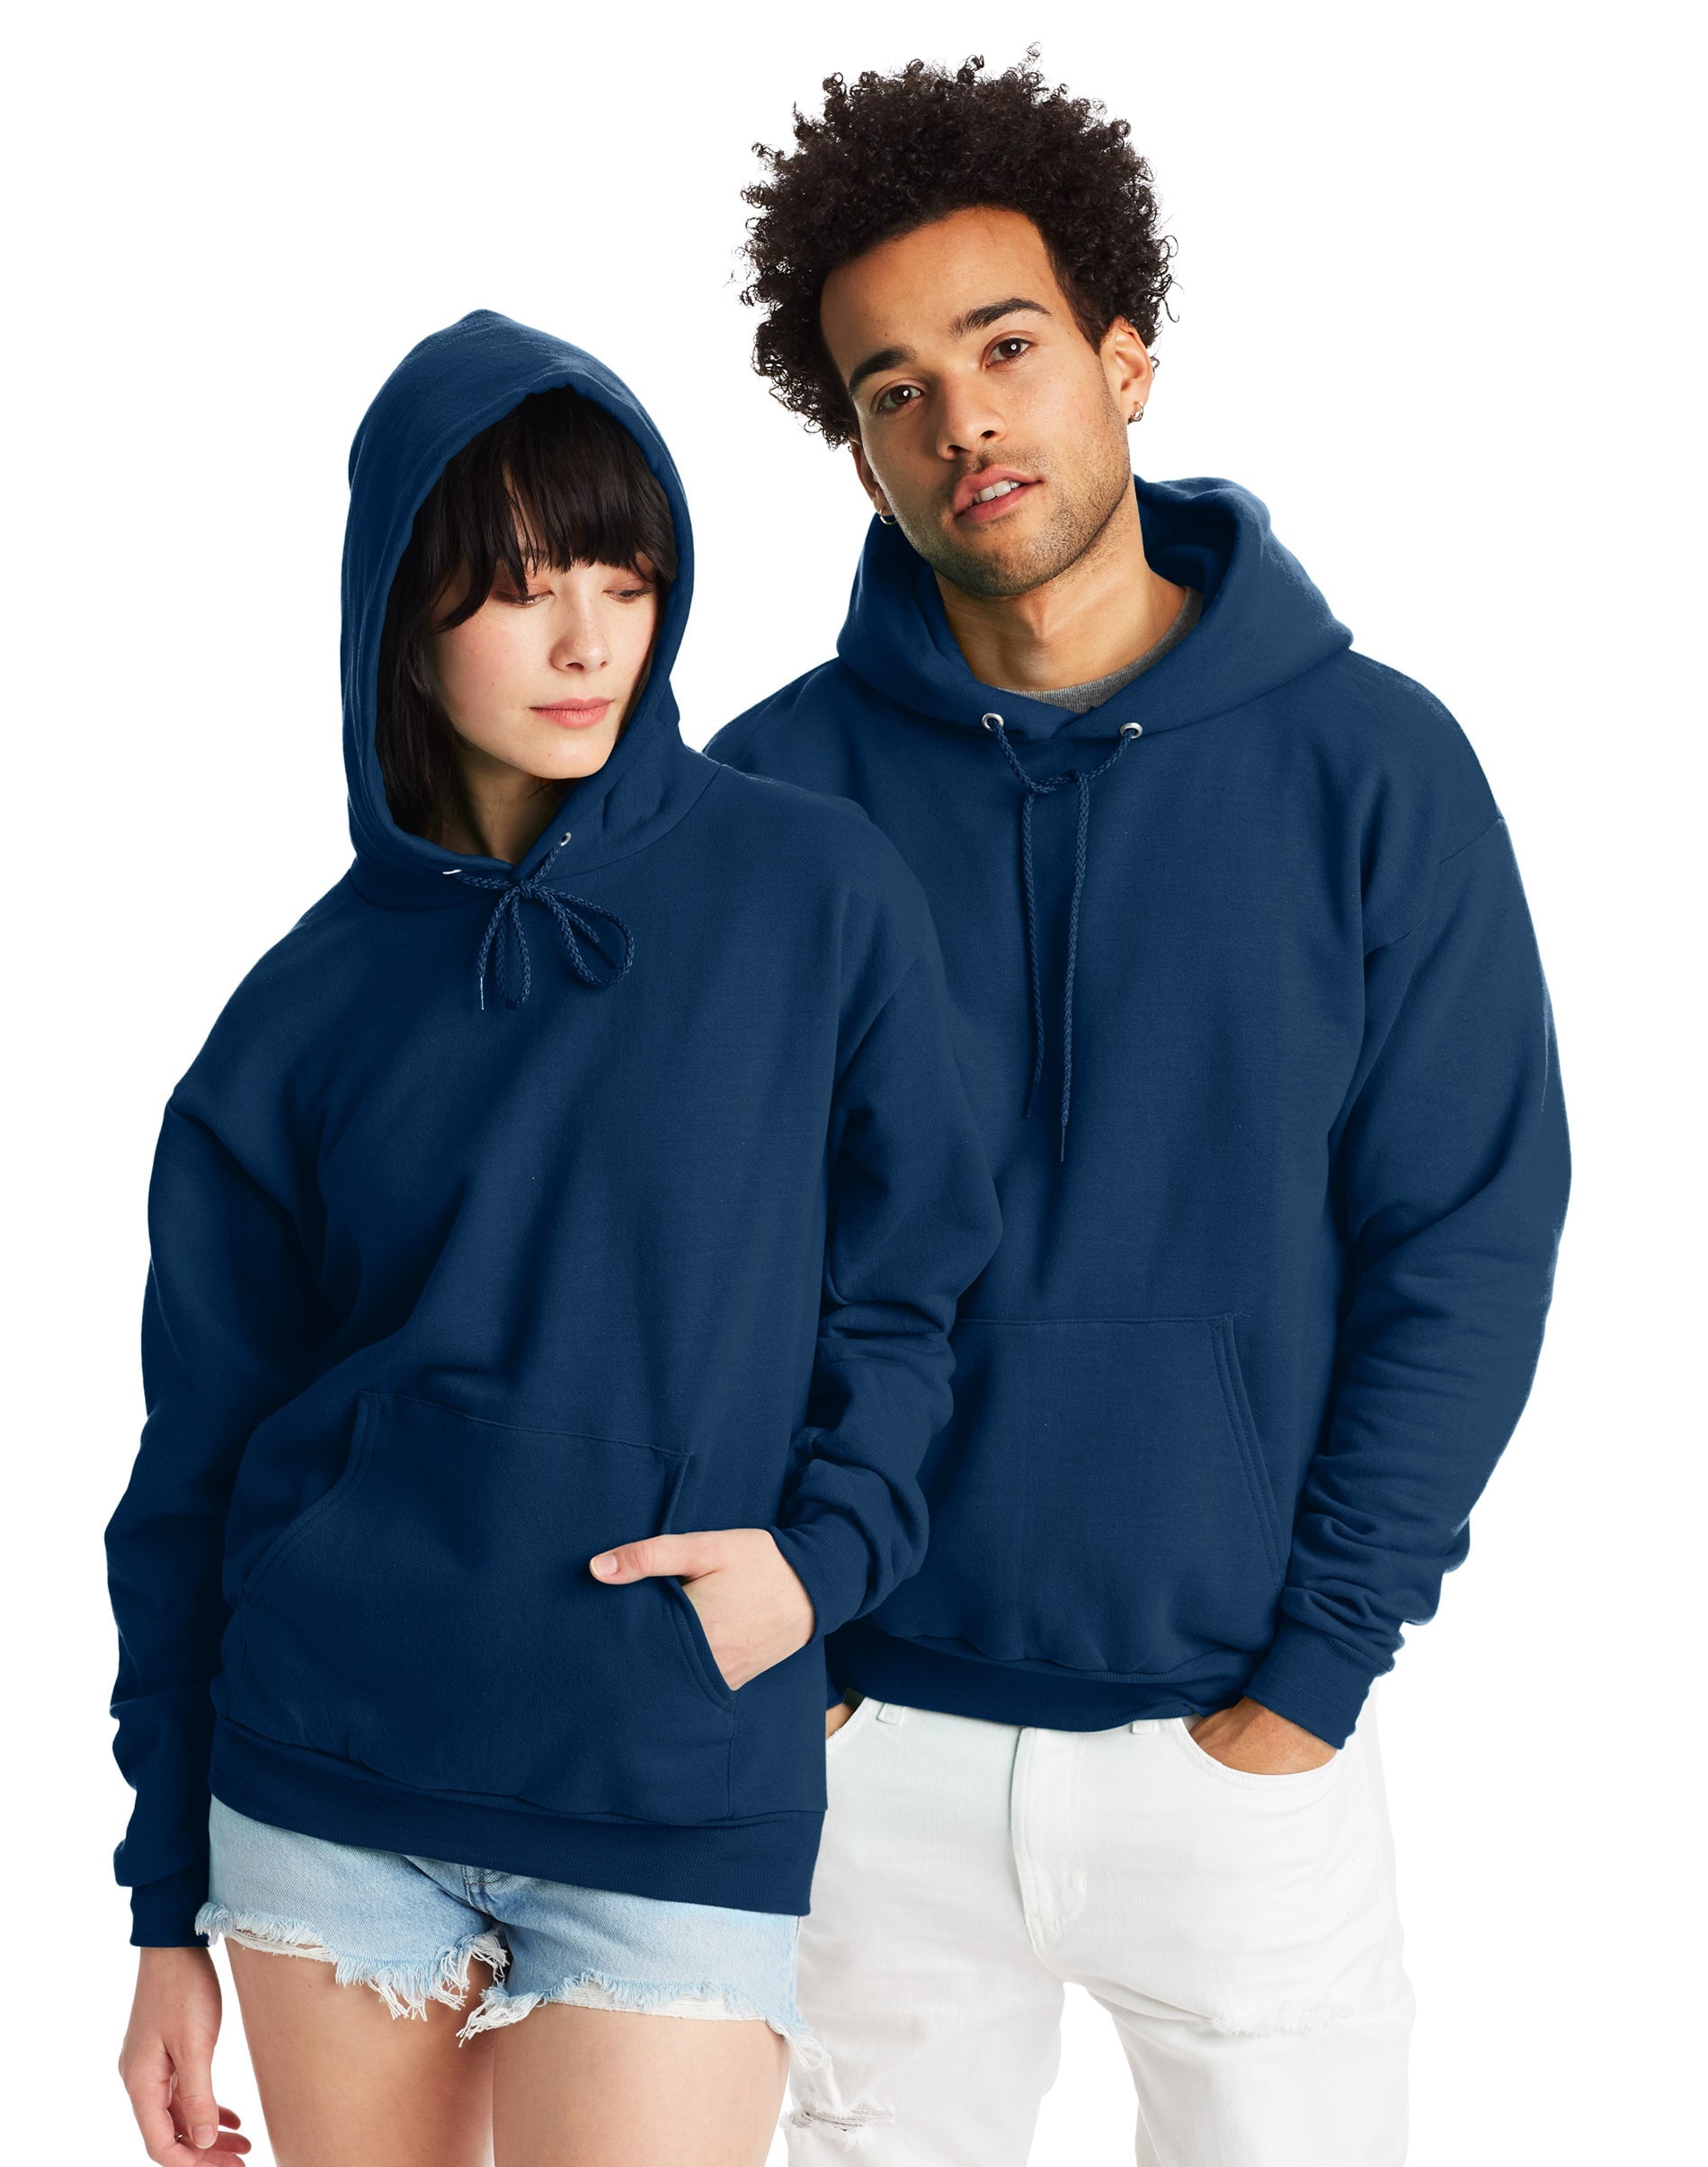 Hanes Men's Sweatshirt, EcoSmart … curated on LTK